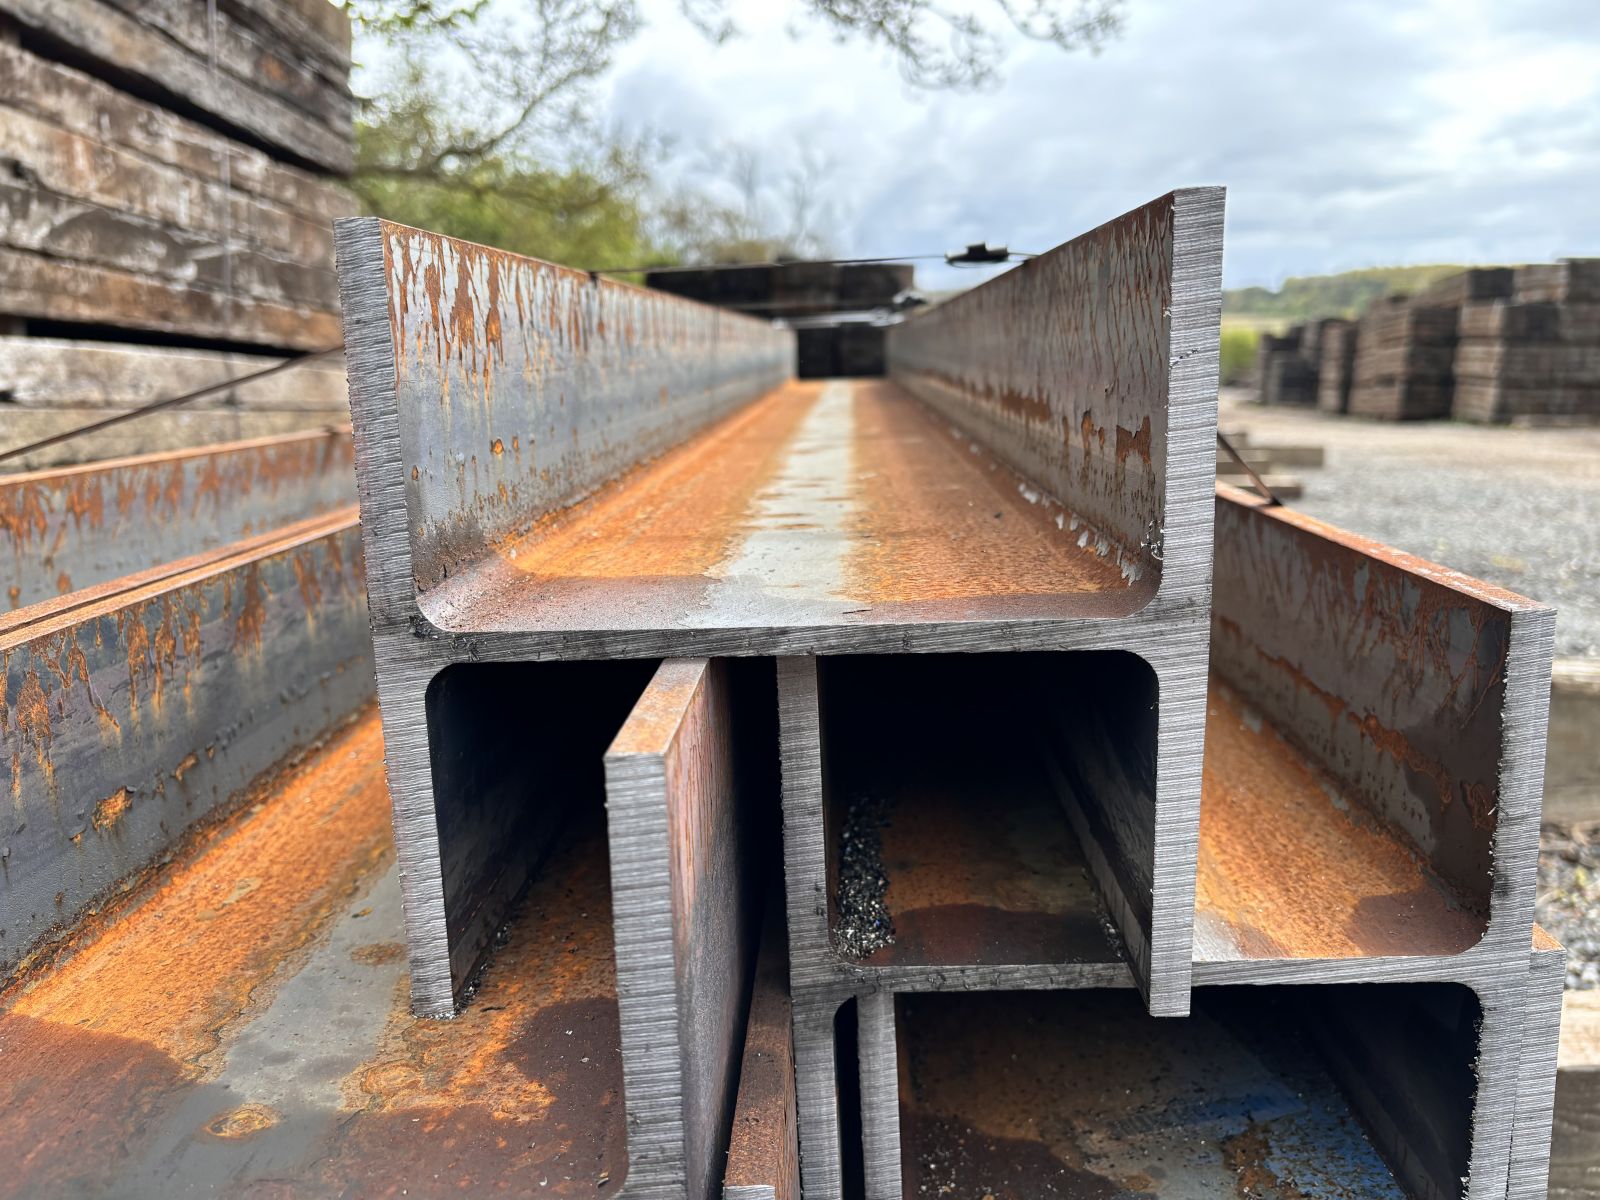 Steel H beams used to construct railway sleeper walls. Railwaysleepers.com